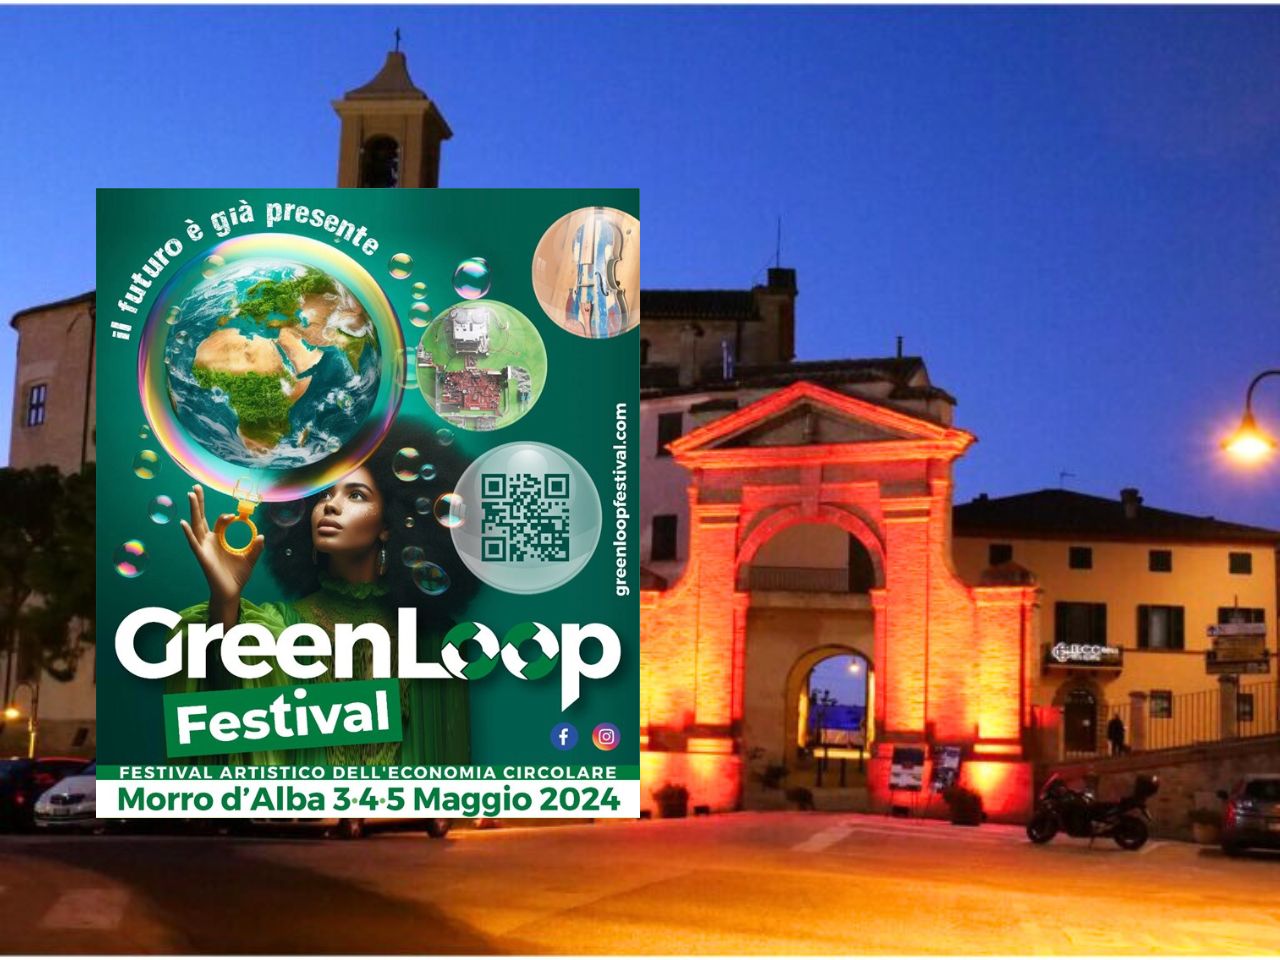 Ecologico, digitale e solidale: dal 3 al 5 maggio il Green Loop Festival colora Morro d’Alba